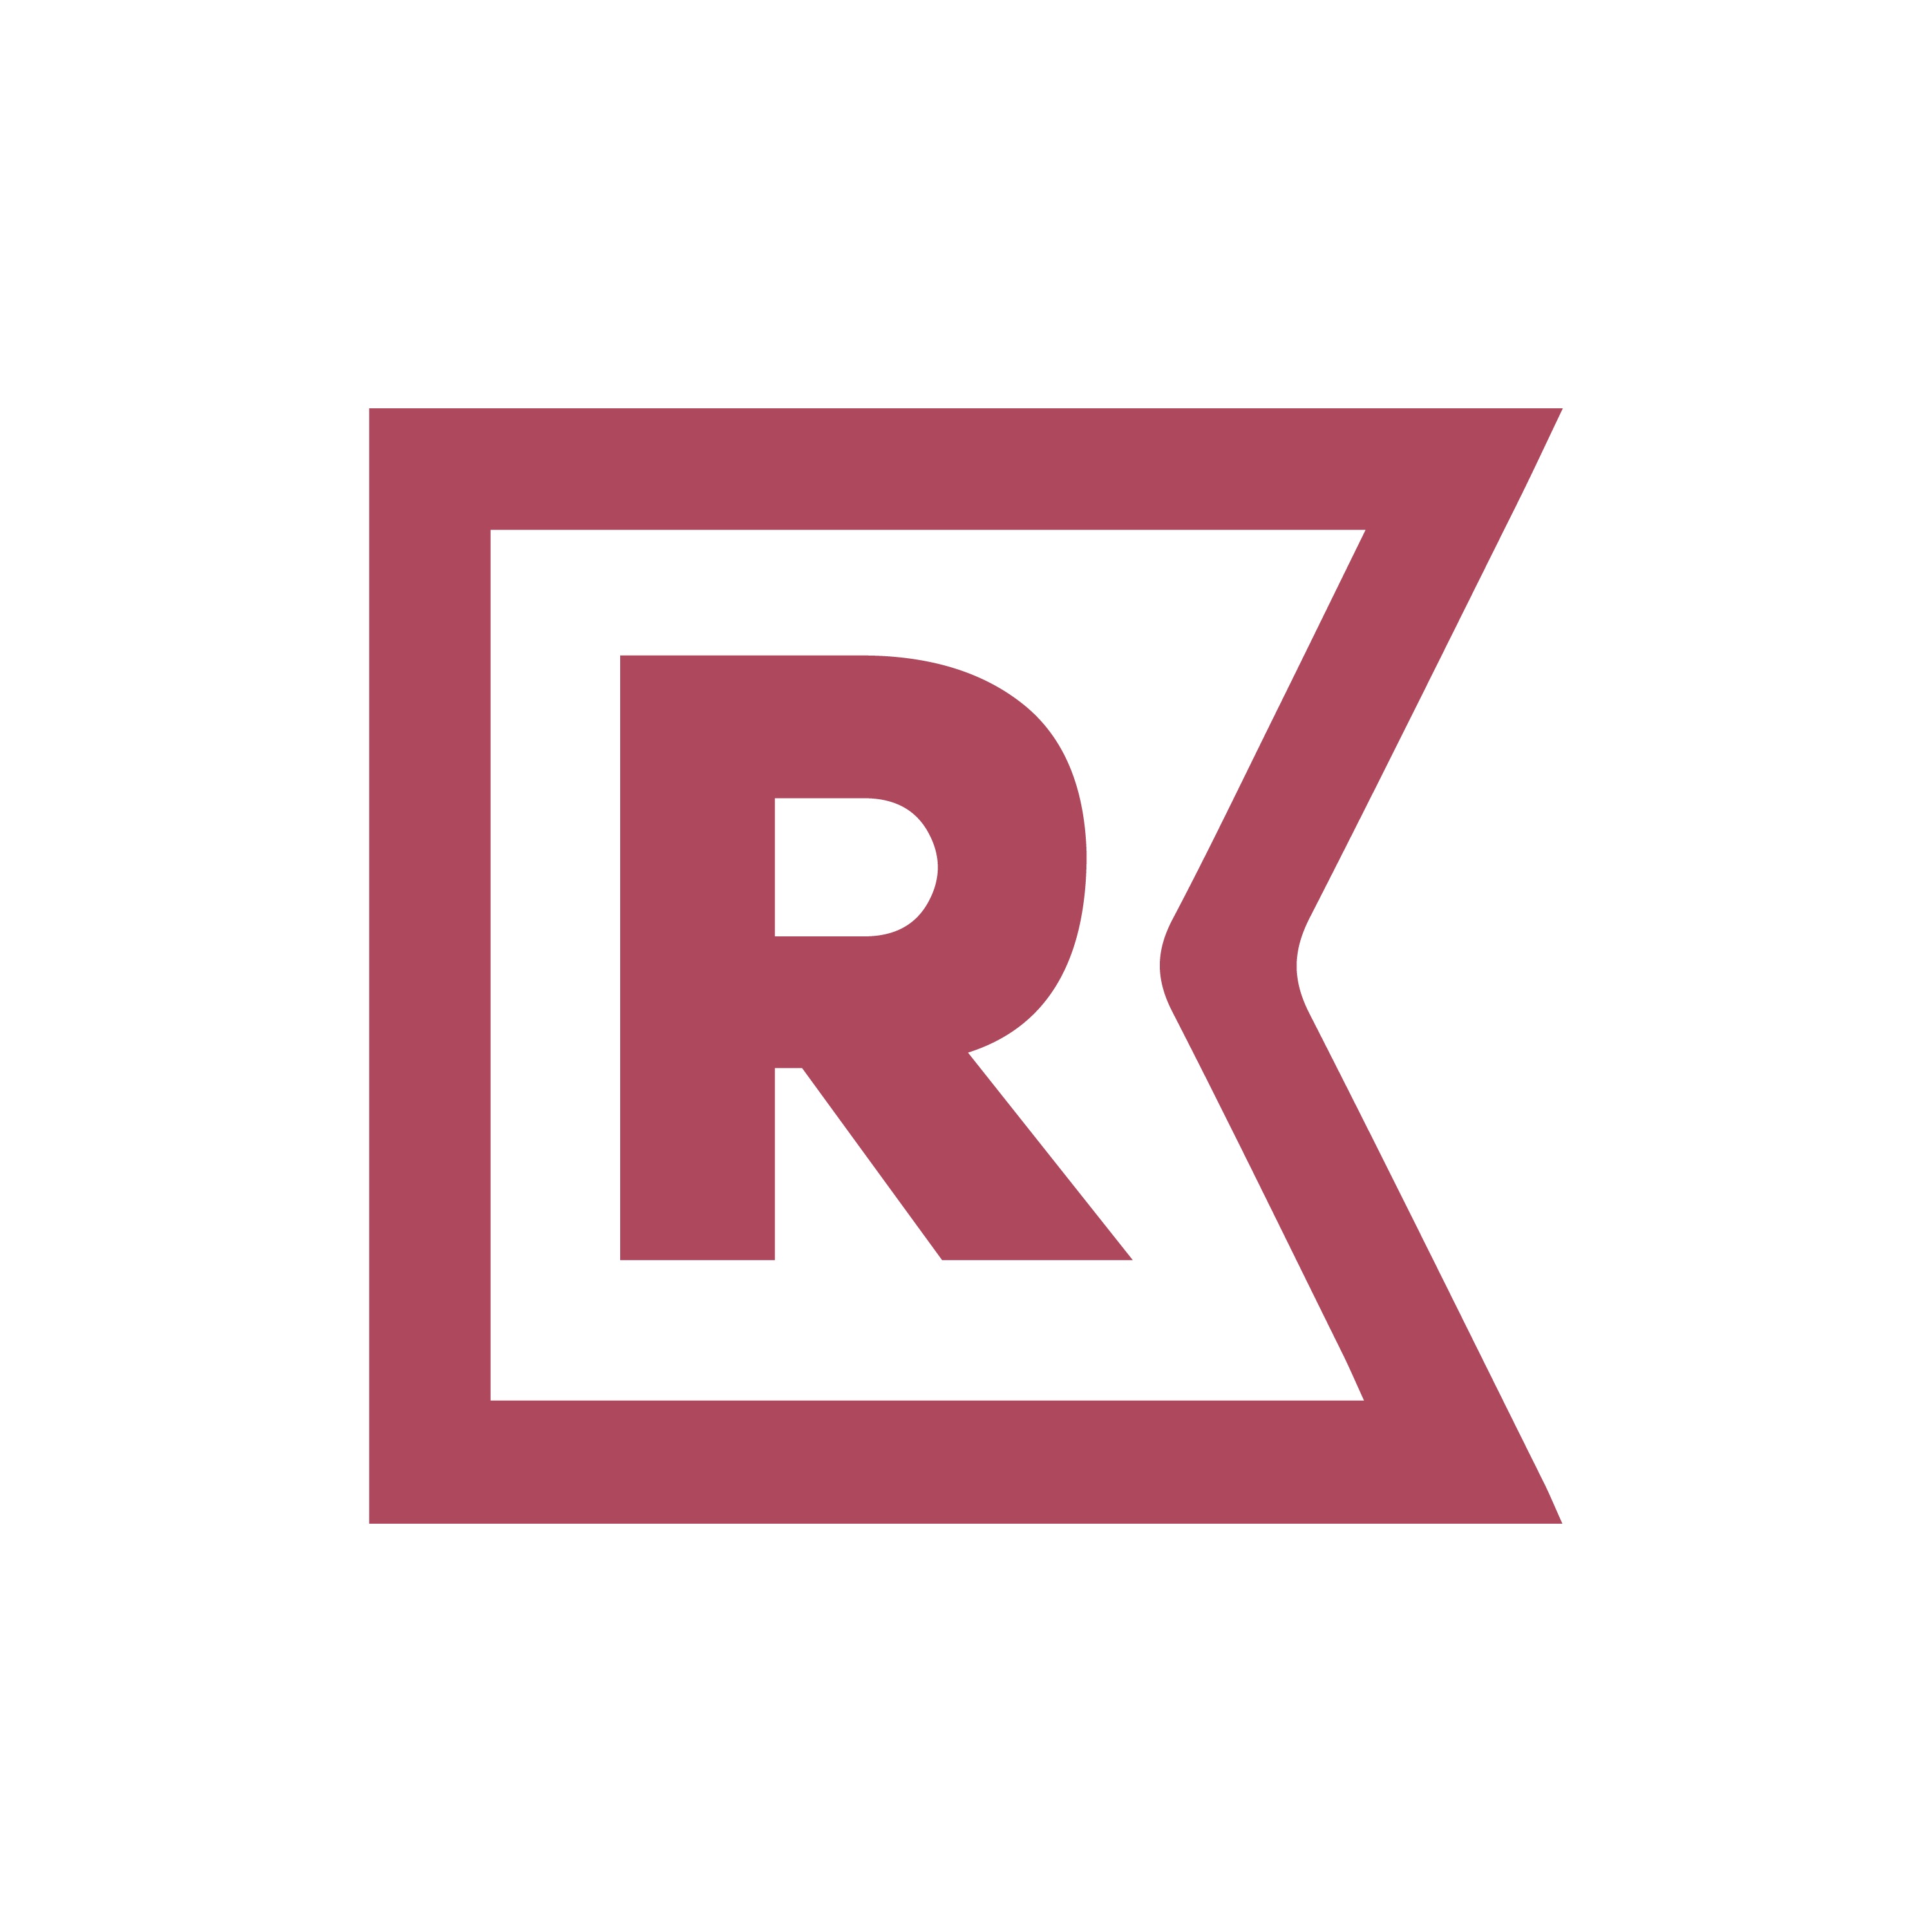 RusBase — независимое издание о технологиях и бизнесе, организатор мероприятий и создатель сервисов для предпринимателей, инвесторов и корпораций. 